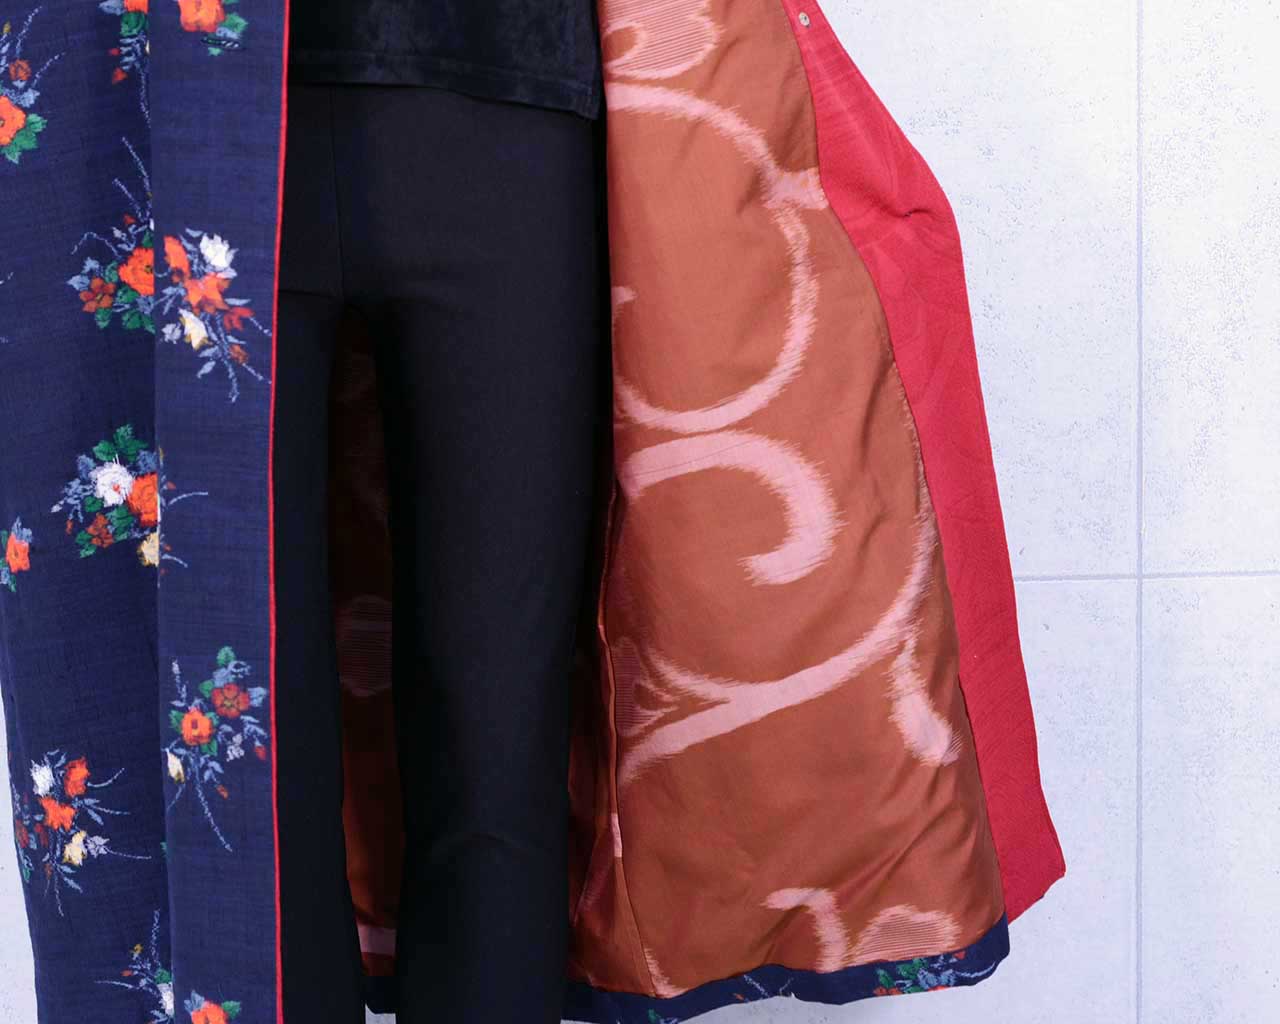 Oshima Tsumugi Coat with Flower Pattern